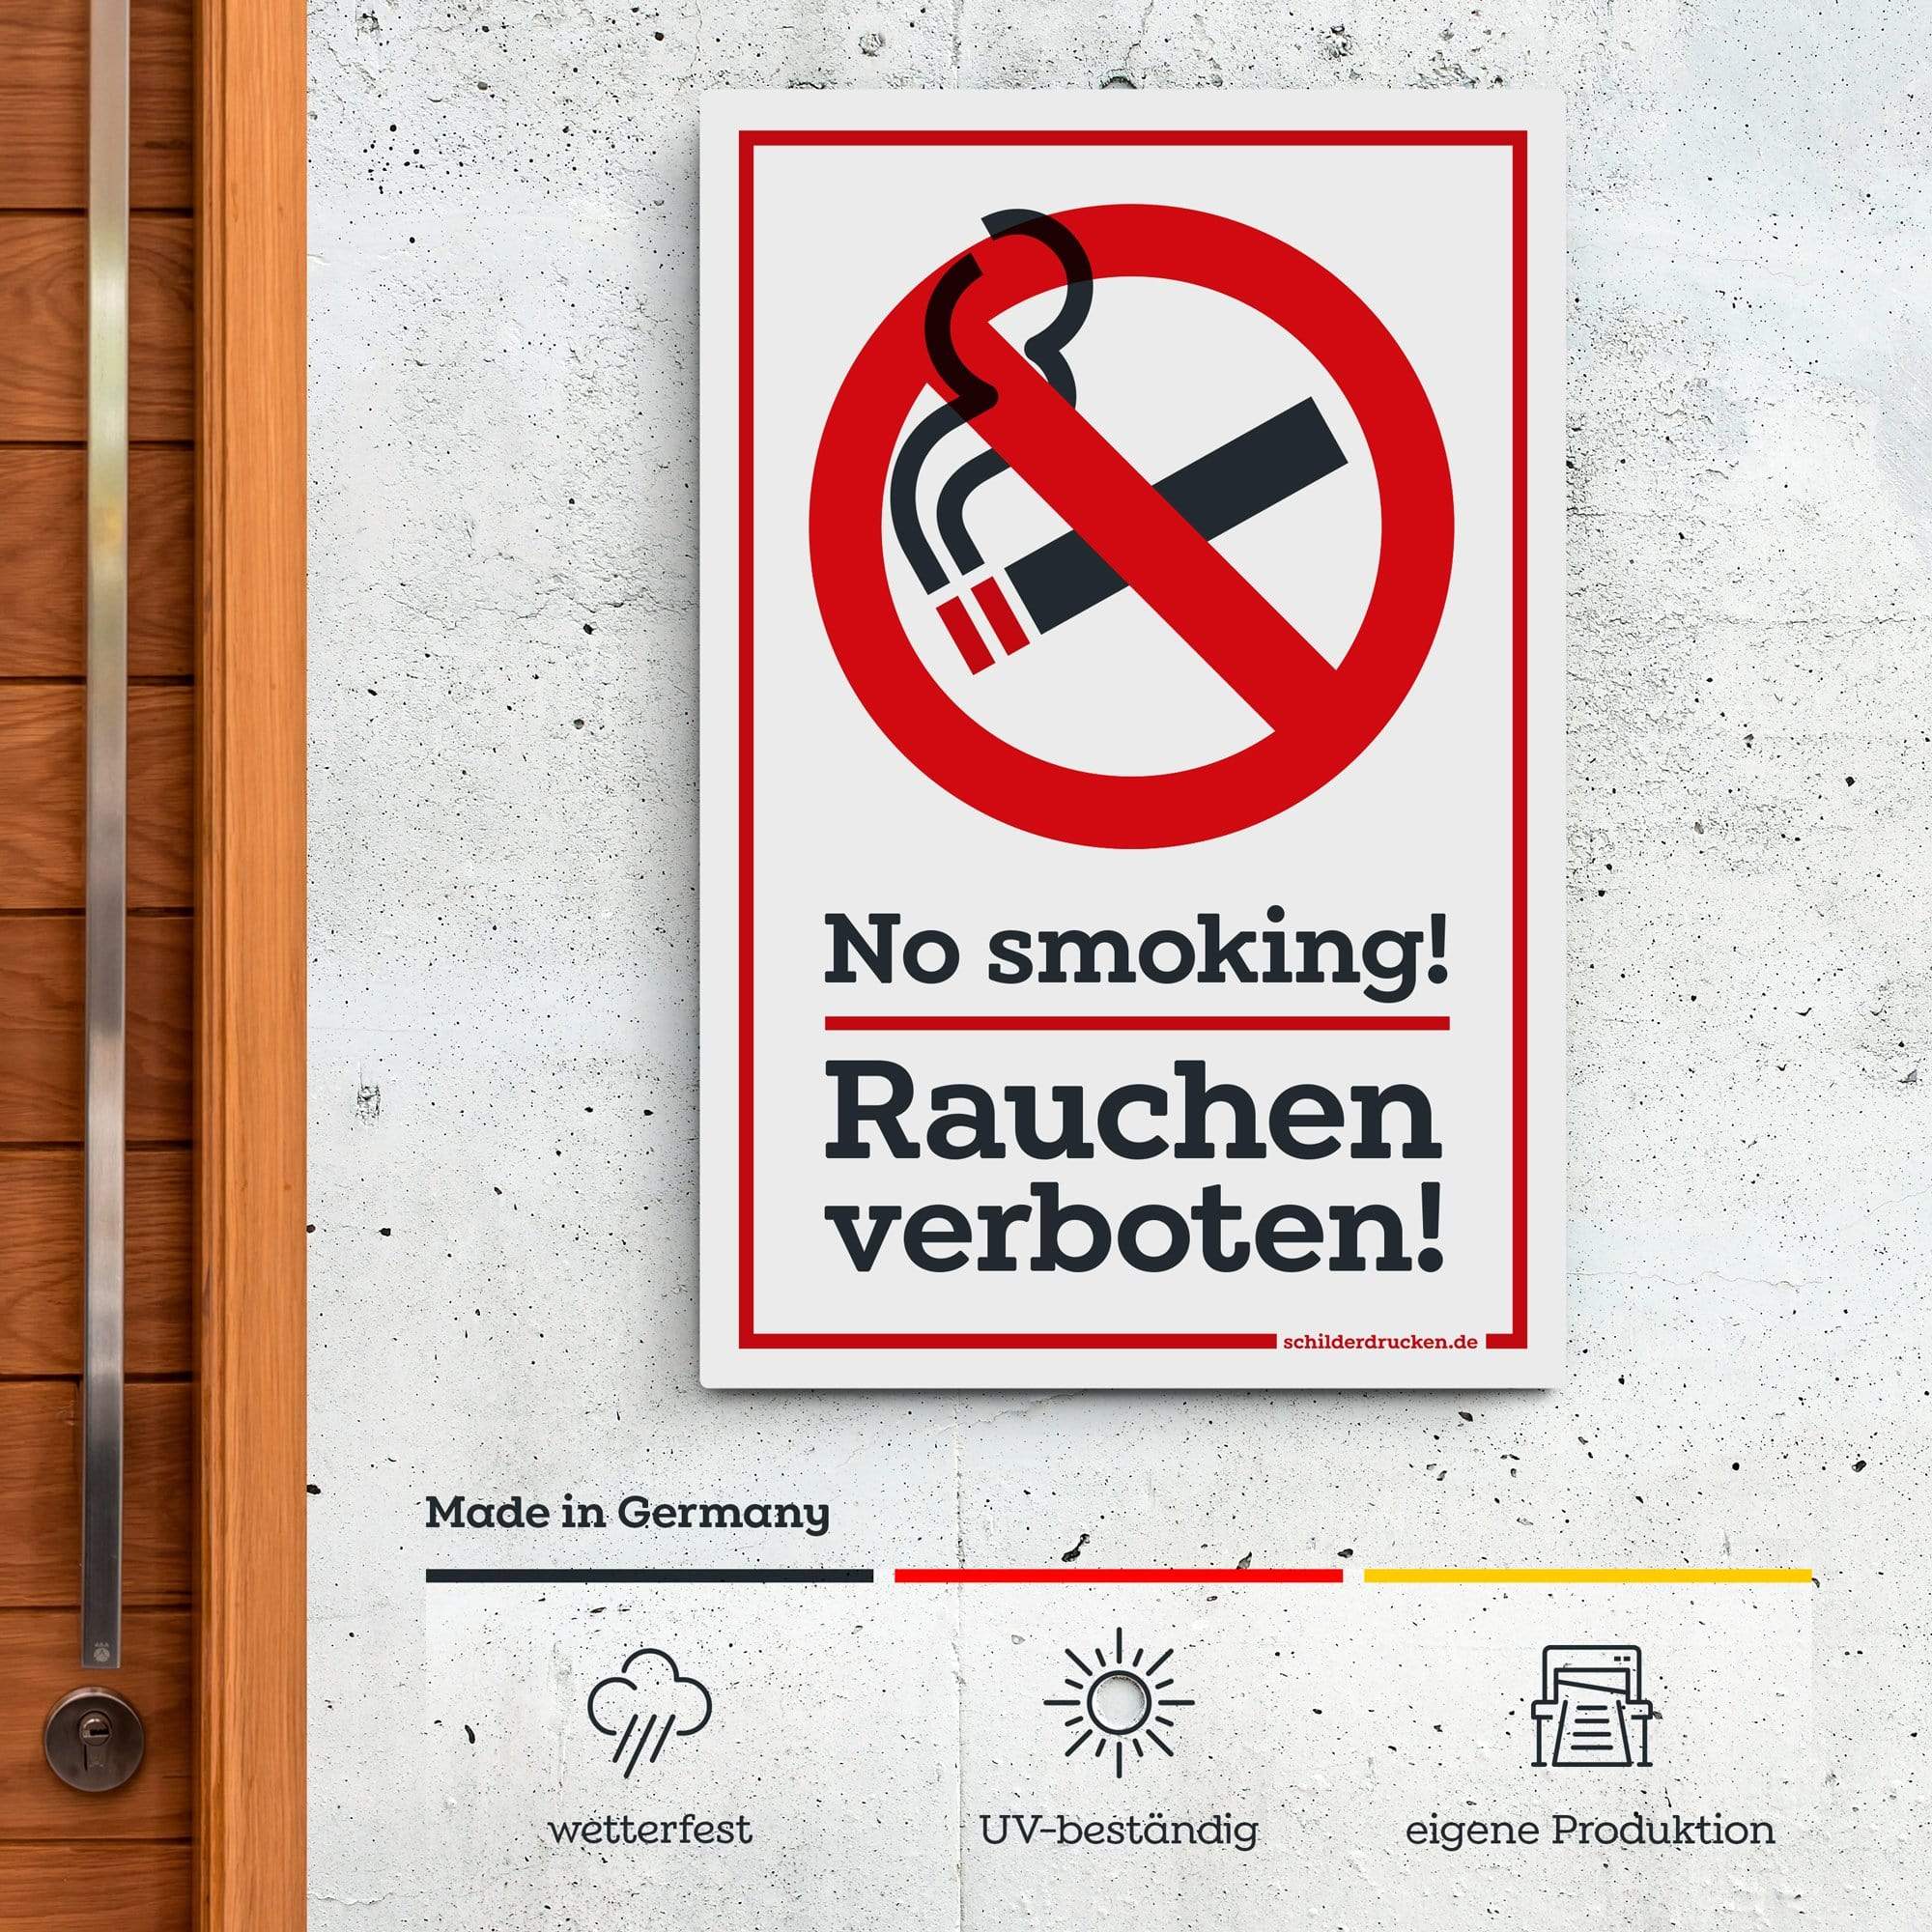 Rauchen verboten – no smoking! 10 x 15 cm / weiss / Alu-Dibond online drucken lassen bei schilderdrucken.de